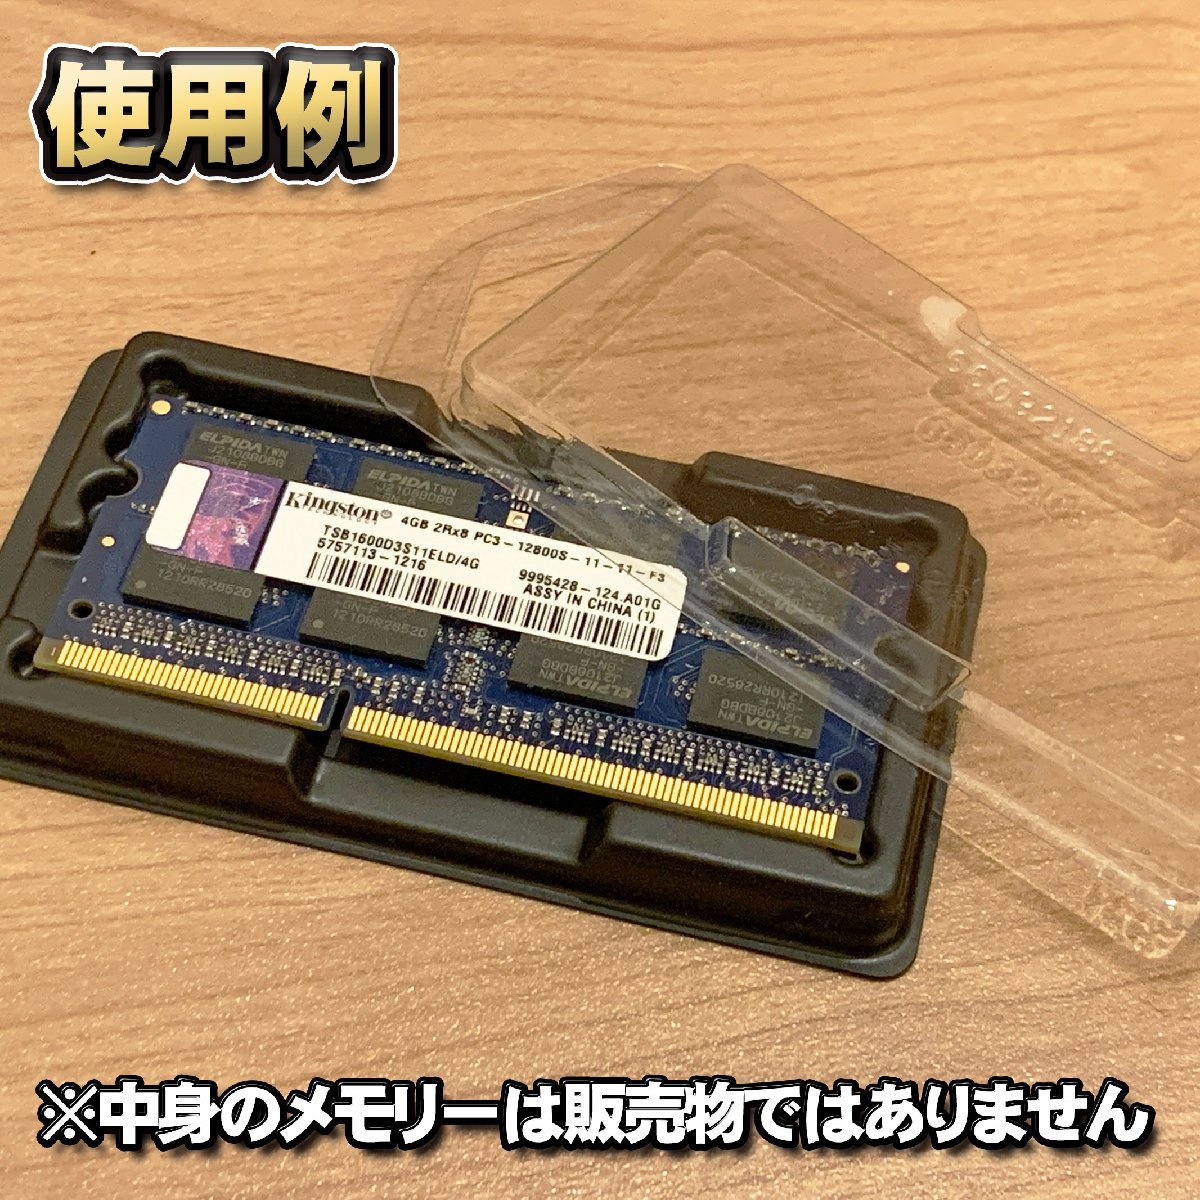 「Type-A」【 DDR 対応 】蓋付き ノートPC メモリー シェルケース S.O.DIMM 用 プラスチック 保管 収納ケース 20枚セット_画像8